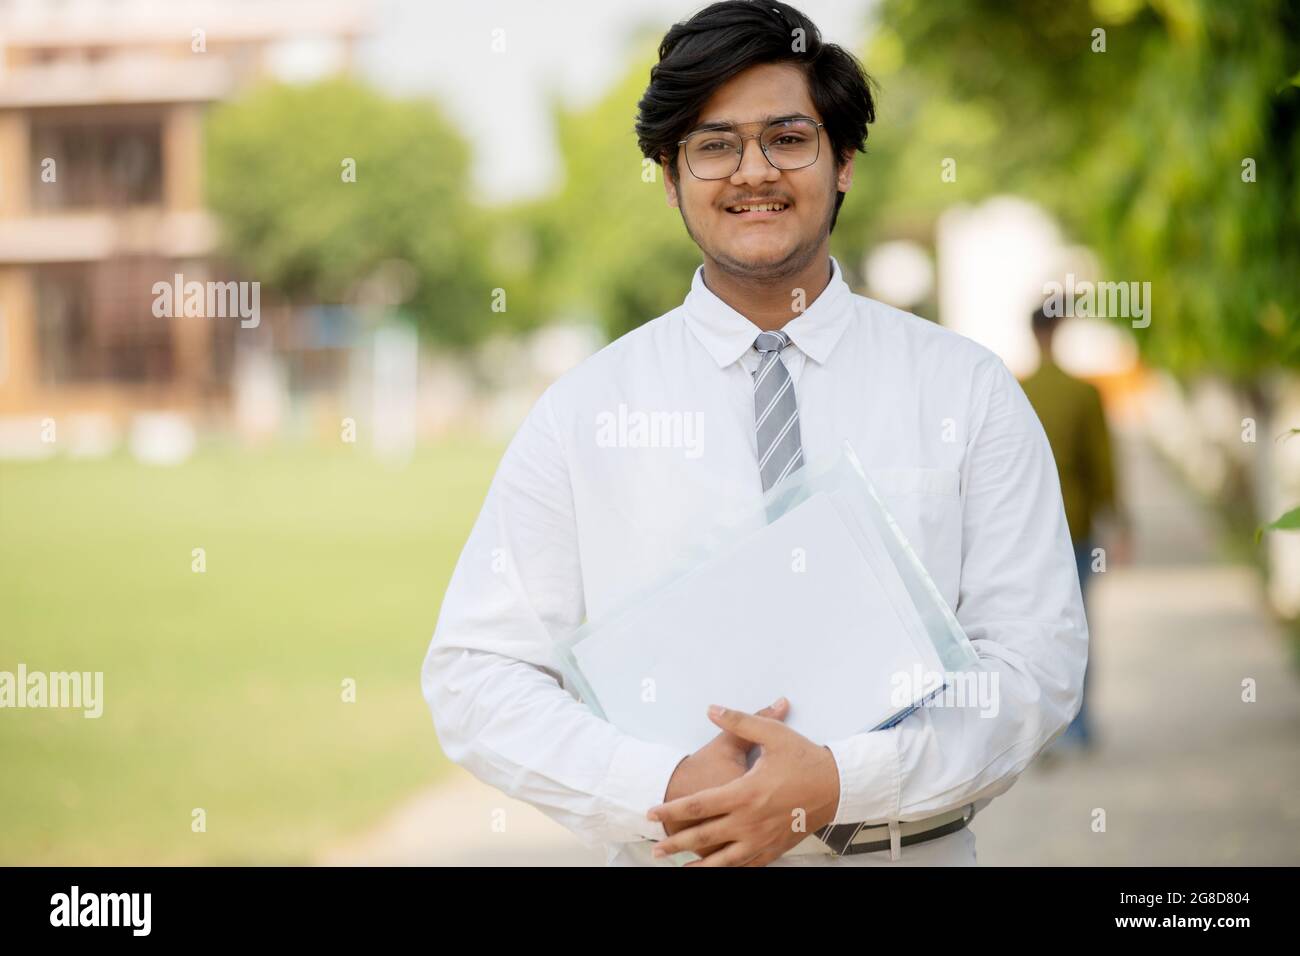 Frontansicht des jungen männlichen Studenten auf dem Campus mit negativem Raum Stockfoto